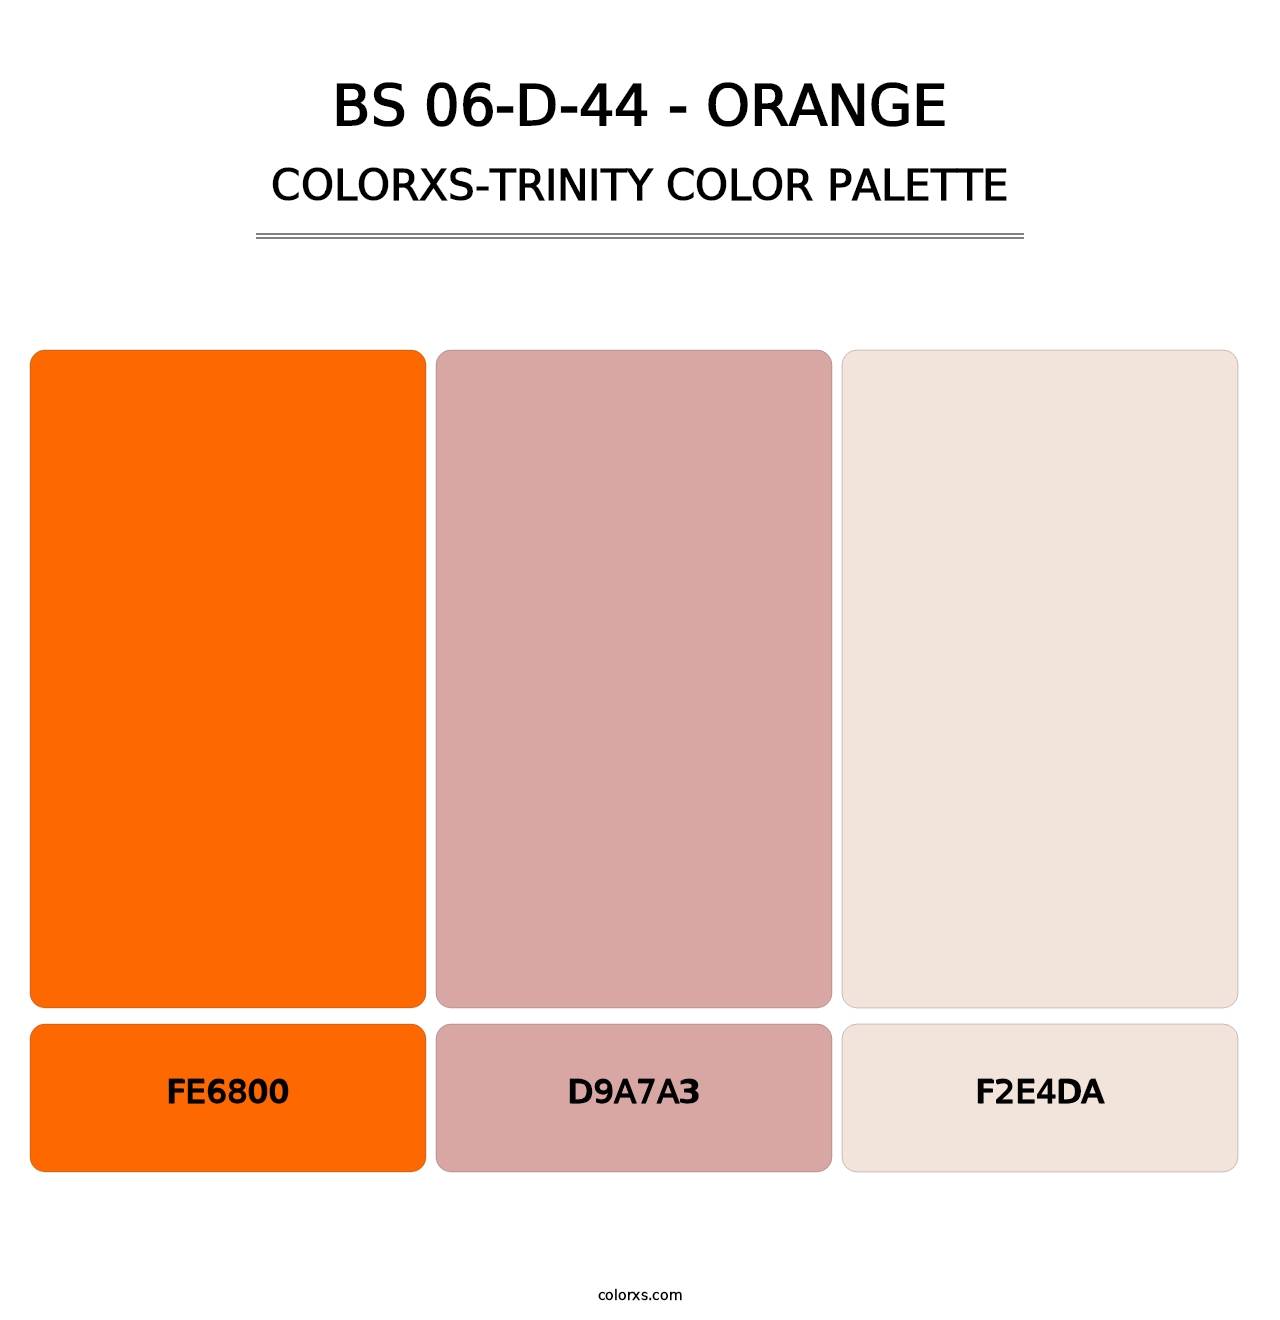 BS 06-D-44 - Orange - Colorxs Trinity Palette